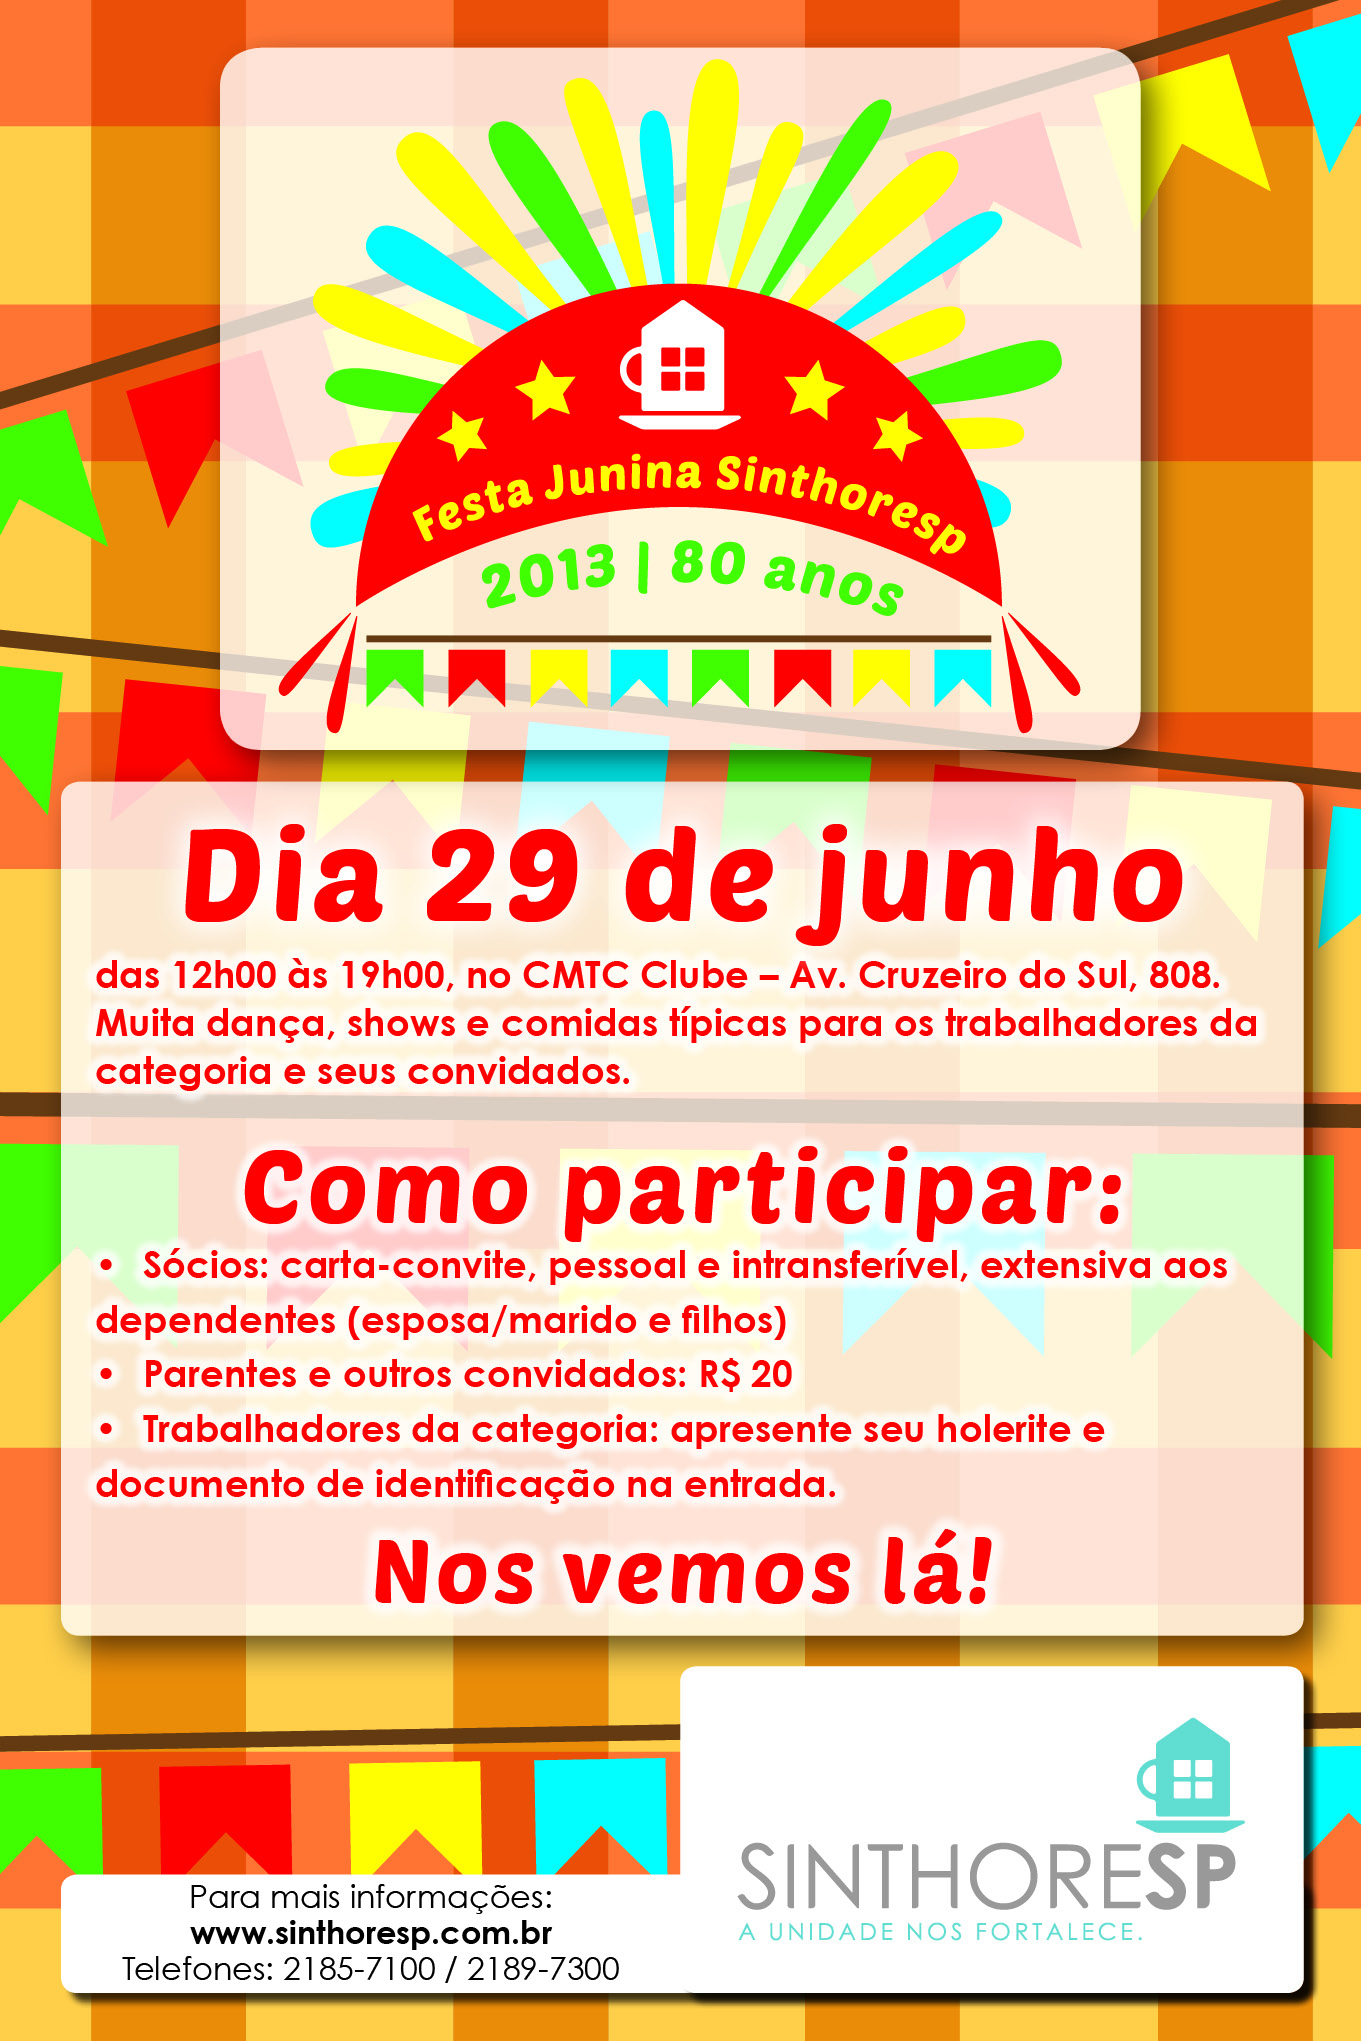 Festa Junina 2013 - Cartaz Grande